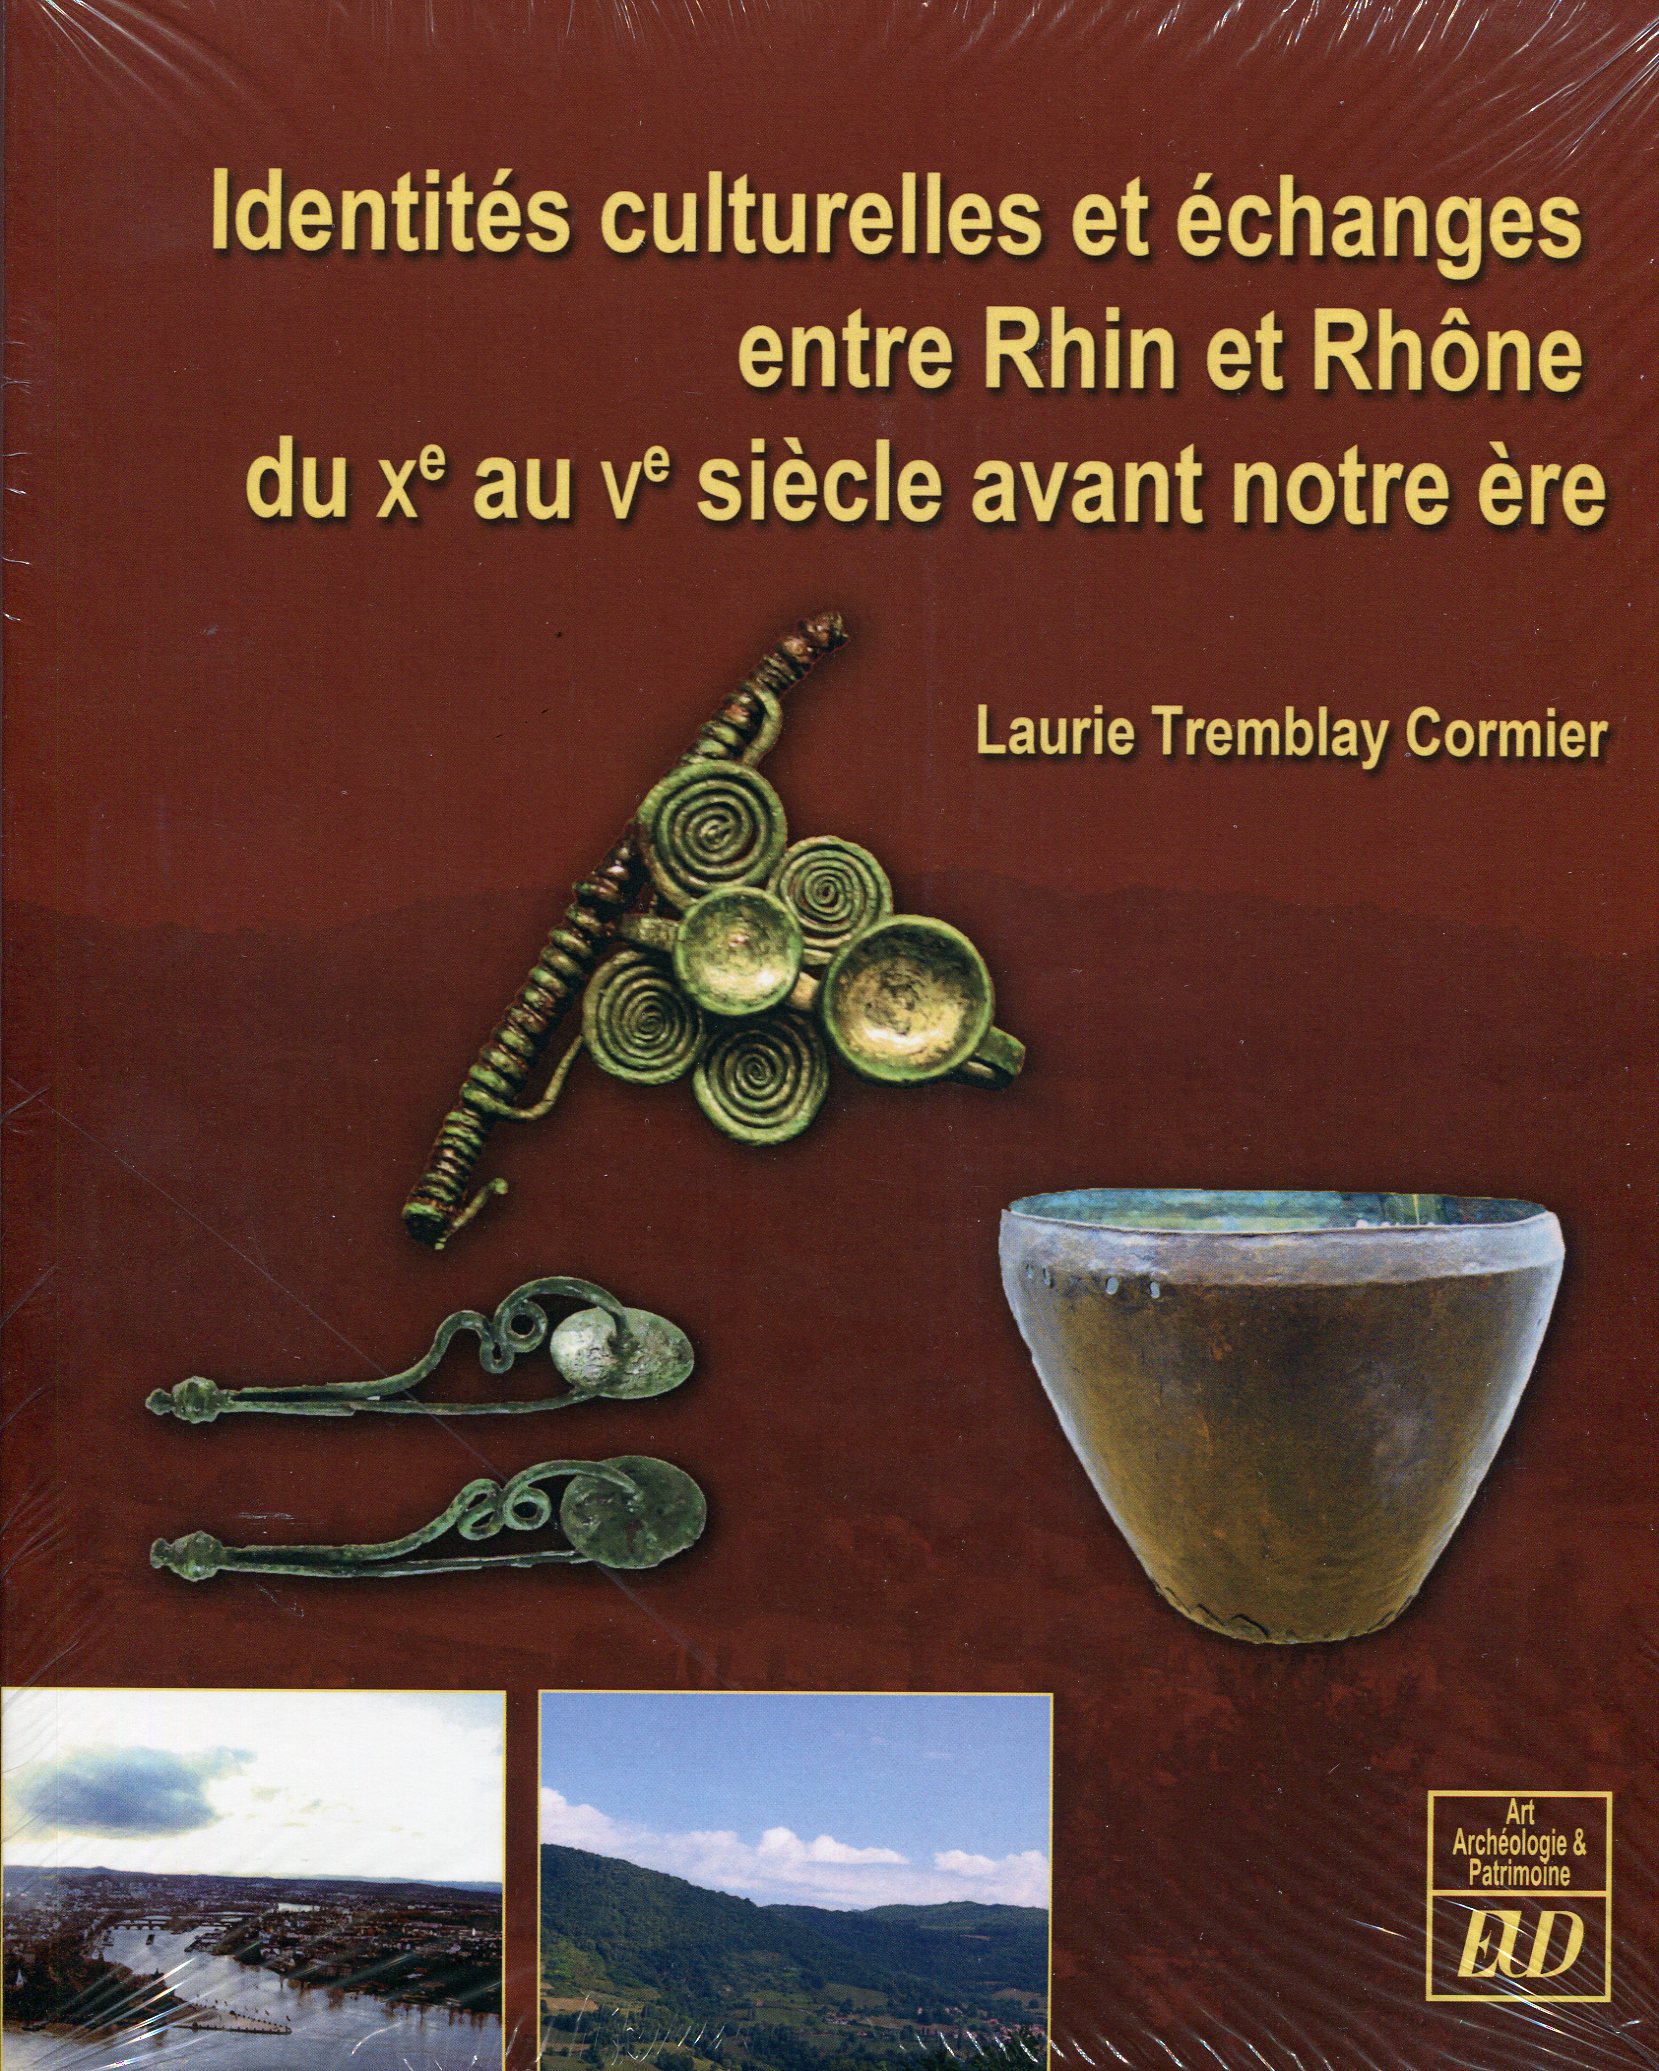 Identités culturelles et échanges entre Rhin et Rhône du Xe au Ve siecle avant notre ère, 2016, 268 p.